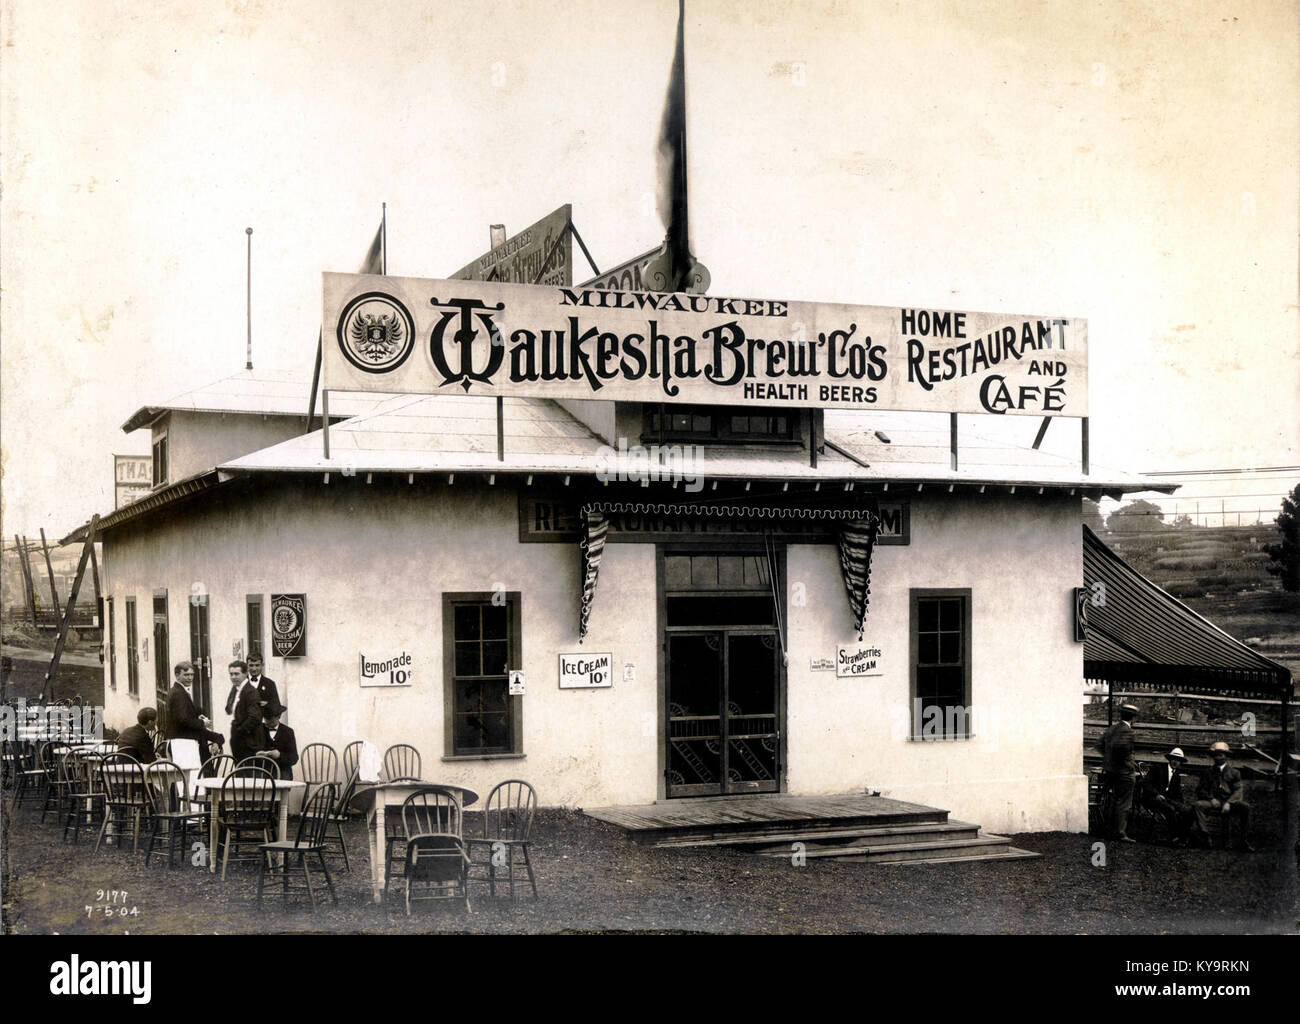 Waukesha Brewing Company Home Ristorante e Cafй al 1904 Fiera Mondiale, 5 Luglio 1904 Foto Stock